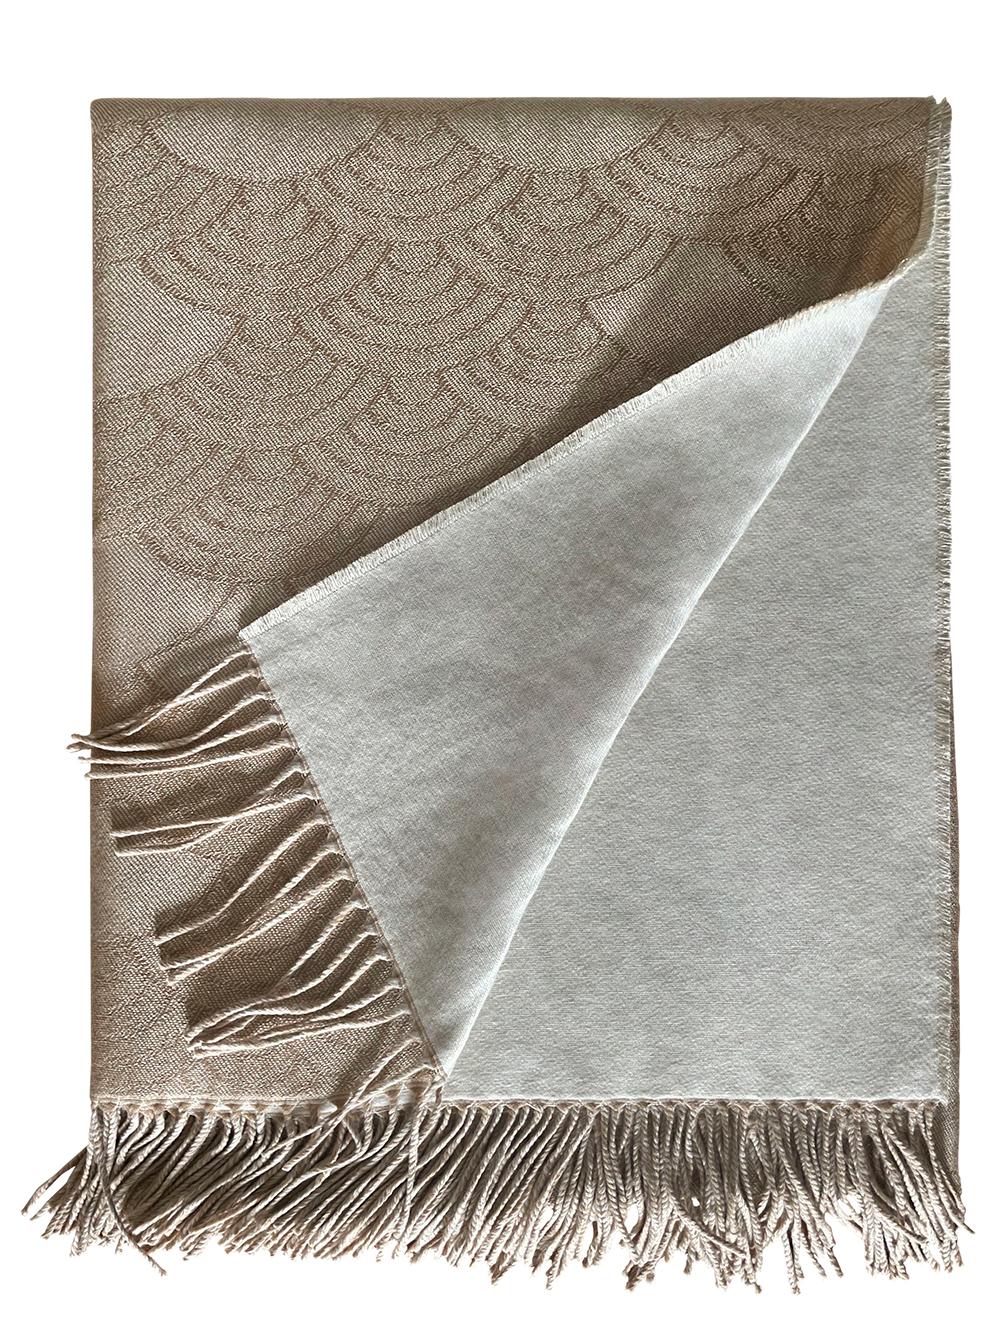 Ce luxueux plaid en Lurex vous assurera une couche élégante et confortable pour vos moments de détente. Réalisé en laine, cachemire et soie Lurex, avec des détails en métal pour plus d'étincelles de lumière, ce plaid est une couverture étonnante et